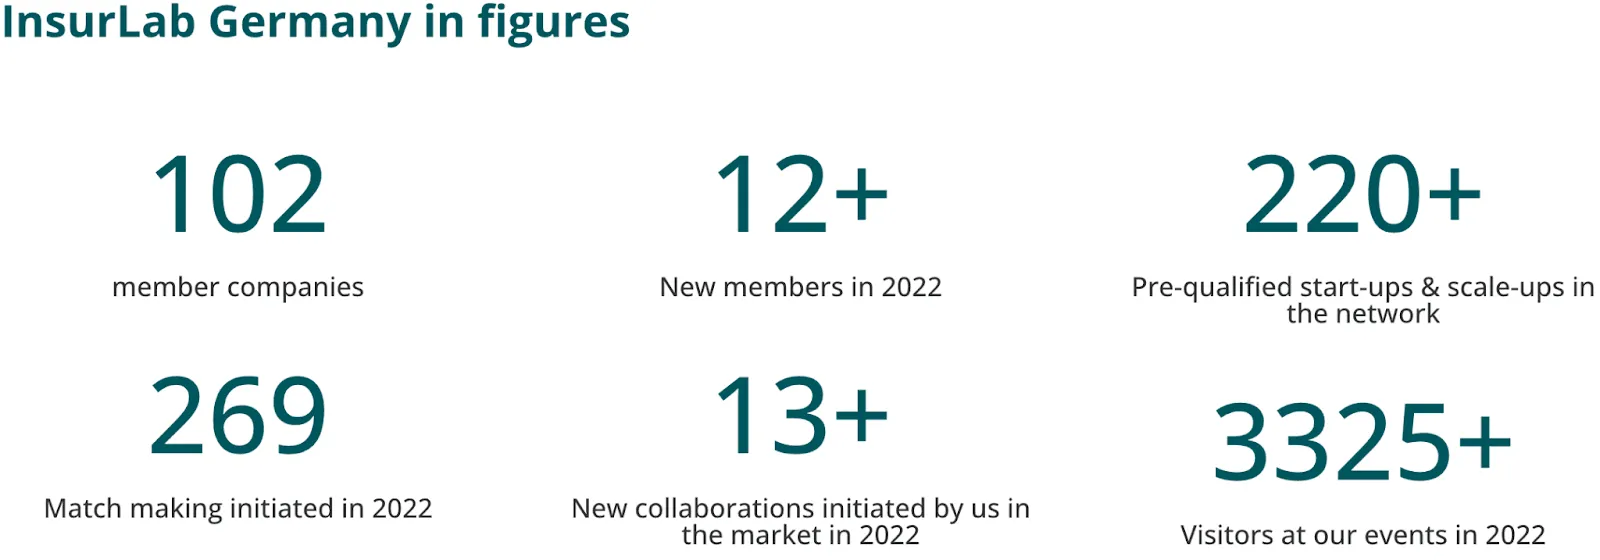 InsurLab Deutschland in Zahlen: 102 Mitgliedsunternehmen. 12+ neue Mitglieder im Jahr 2022. 220+ präqualifizierte Start-ups &#x26; Scale-ups im Netzwerk. 269 initiierte Matchmakings in 2022. 13+ Von uns initiierte neue Kooperationen im Markt in 2022. 3325+ Besucher bei unseren Veranstaltungen im Jahr 2022.